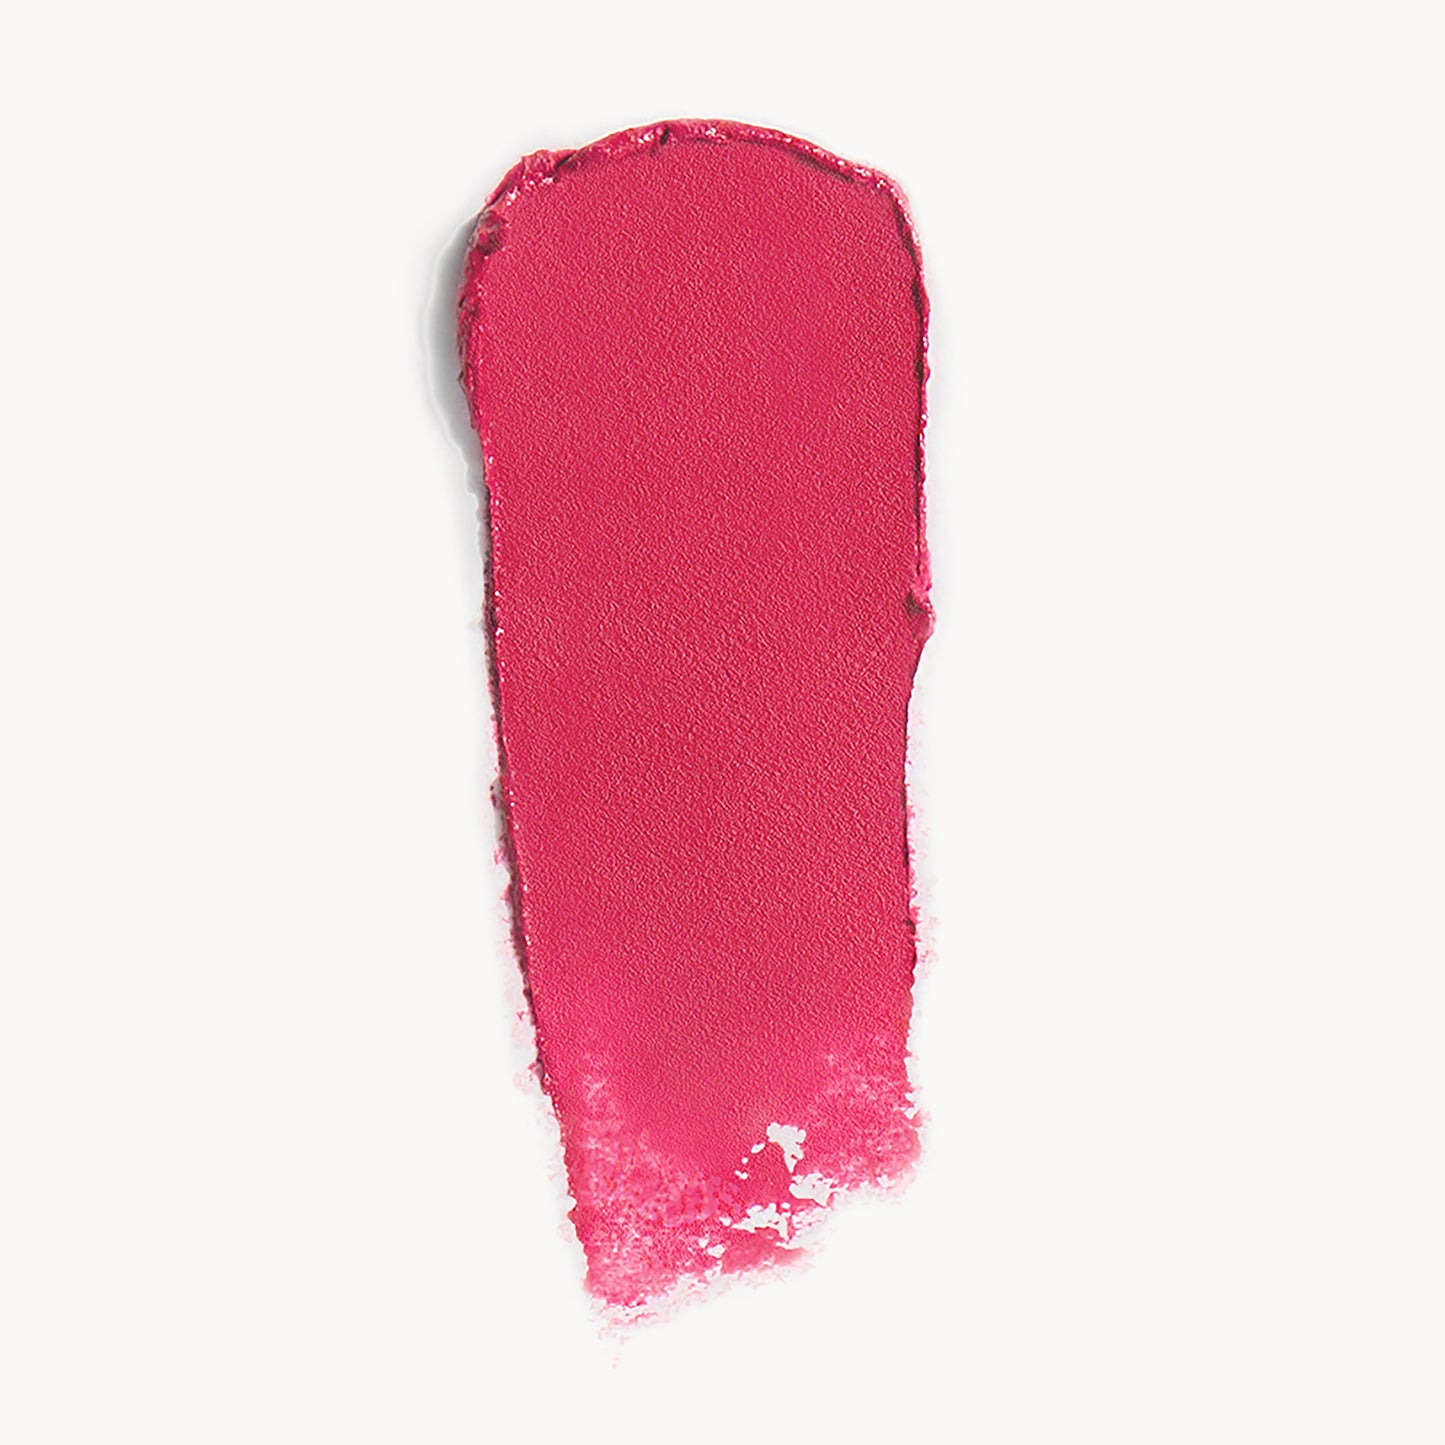 Lipstick--Empower